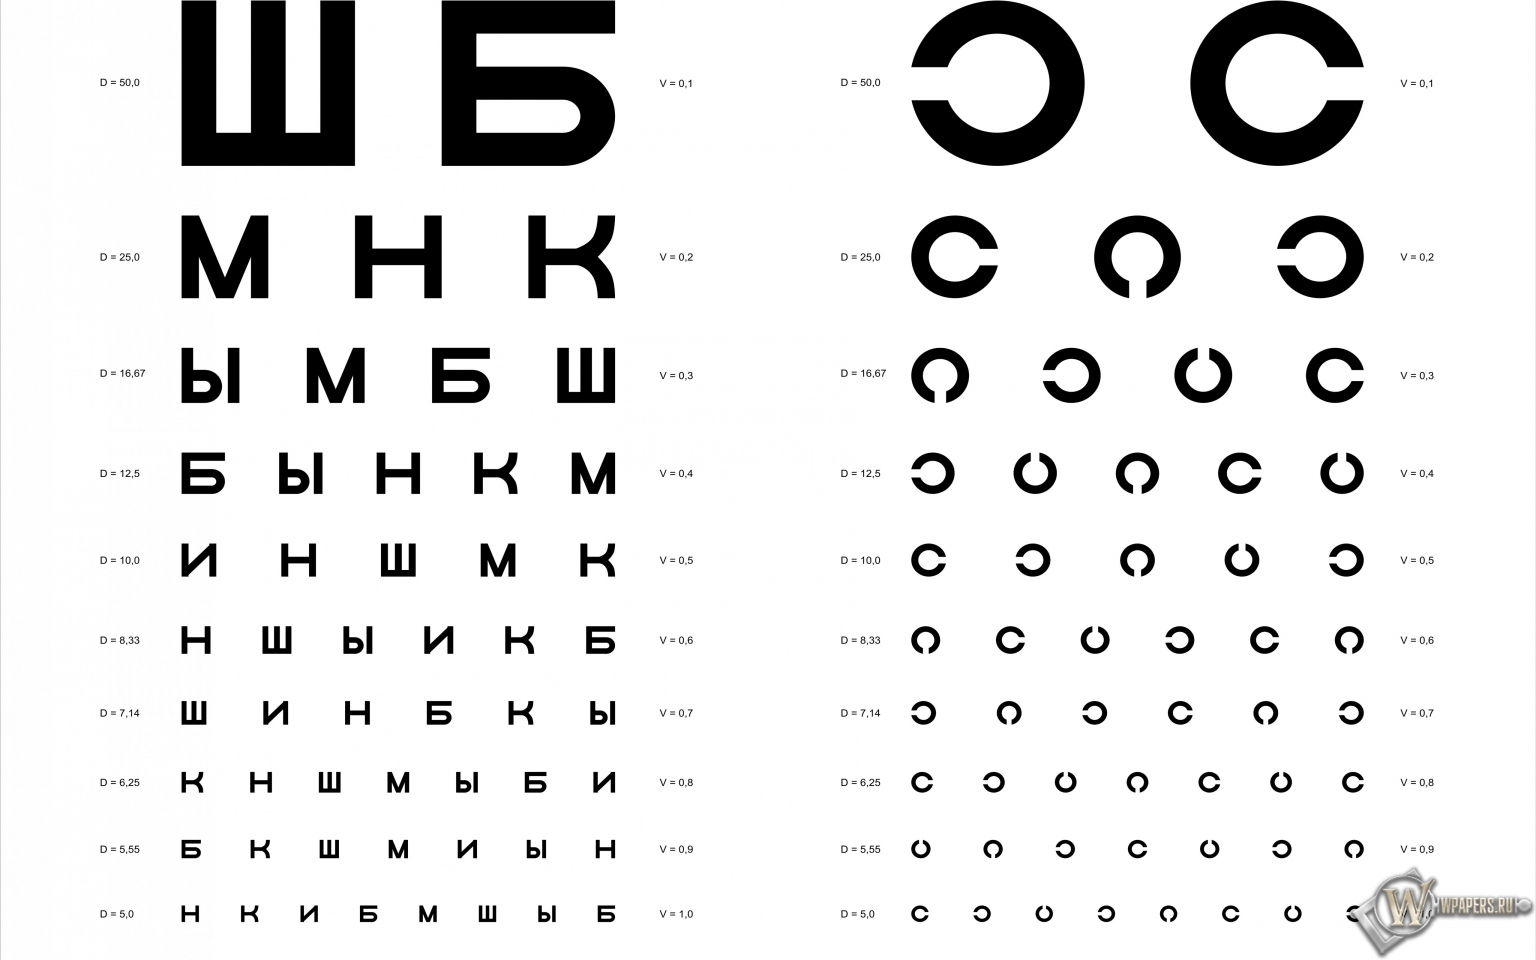 Таблица Д.А. Сивцева для проверки зрения 1536x960